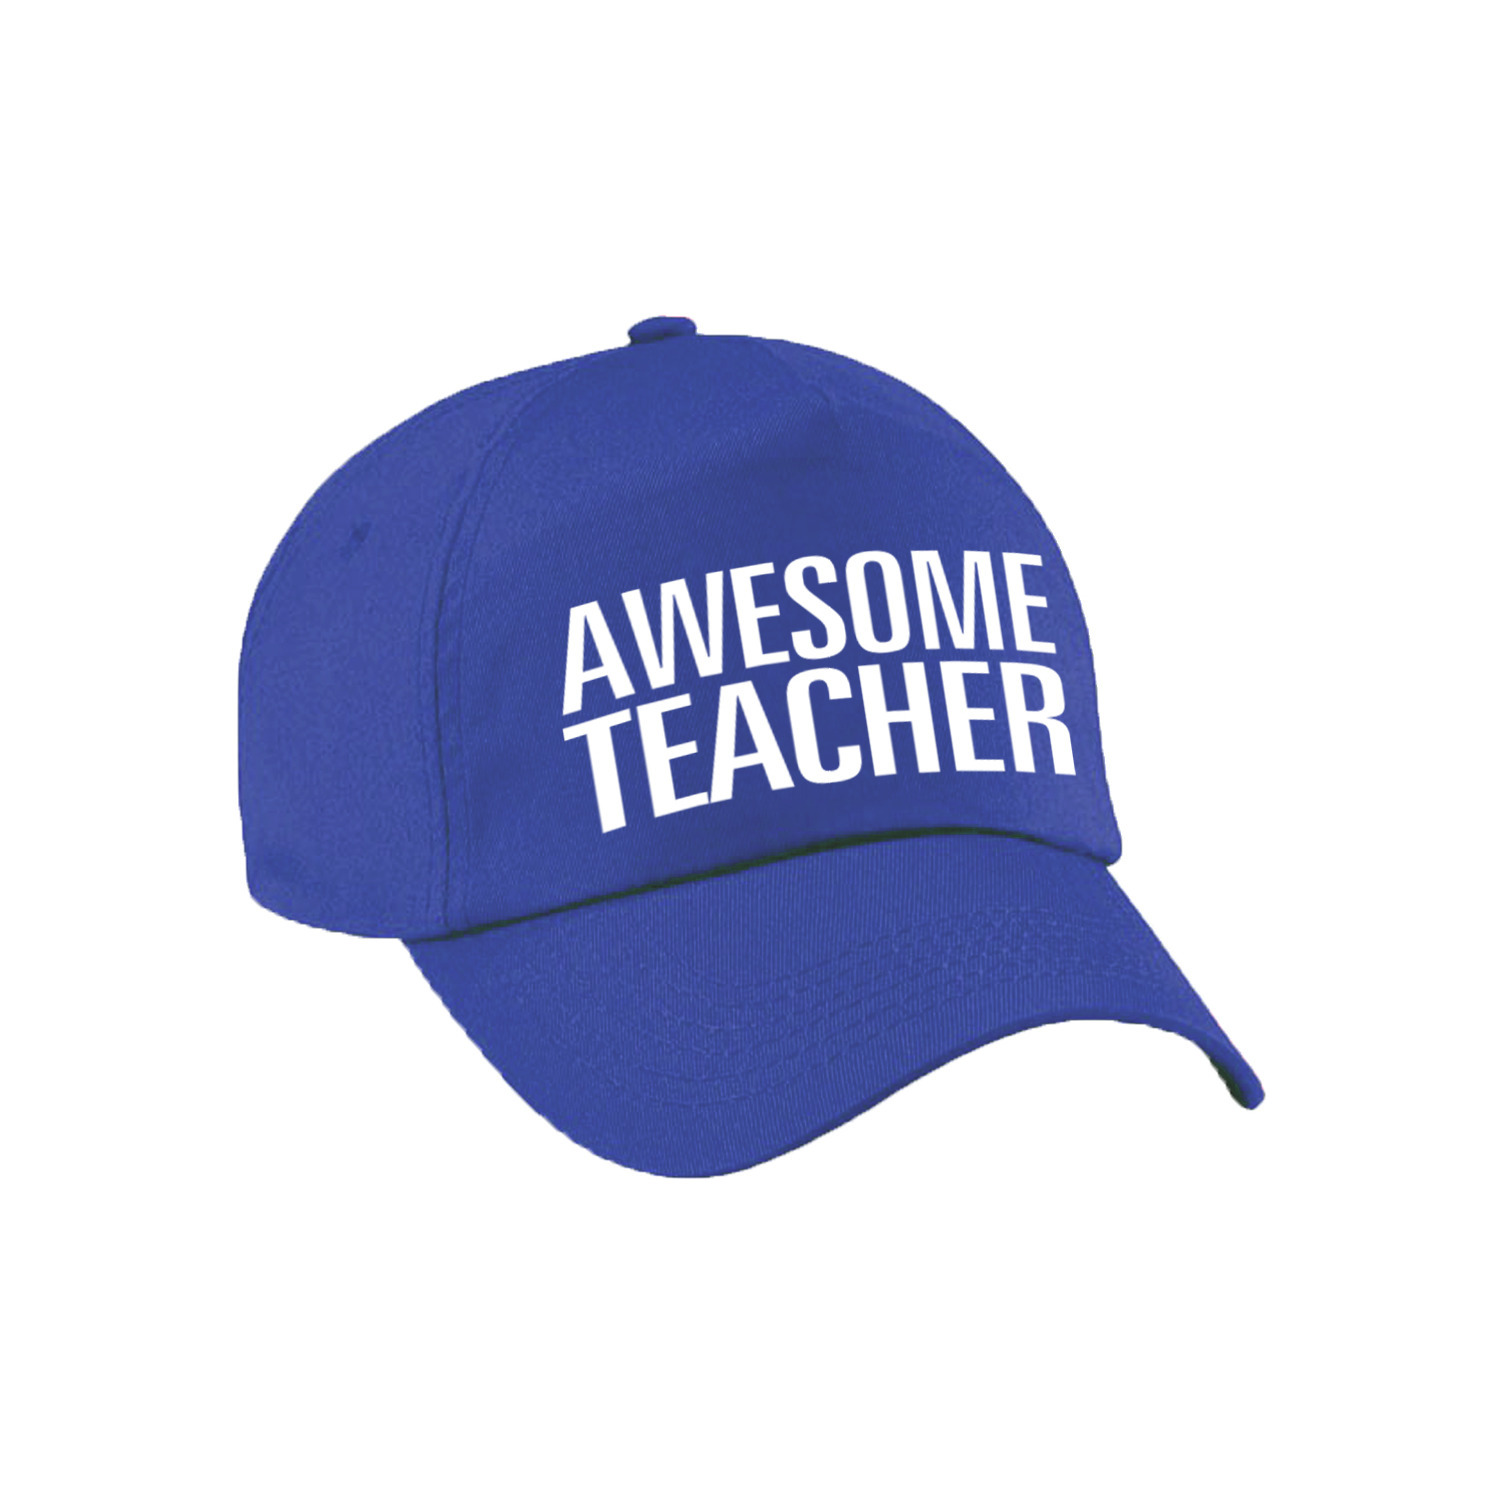 Awesome teacher cadeau pet / cap voor juf / meester blauw voor dames en heren Top Merken Winkel